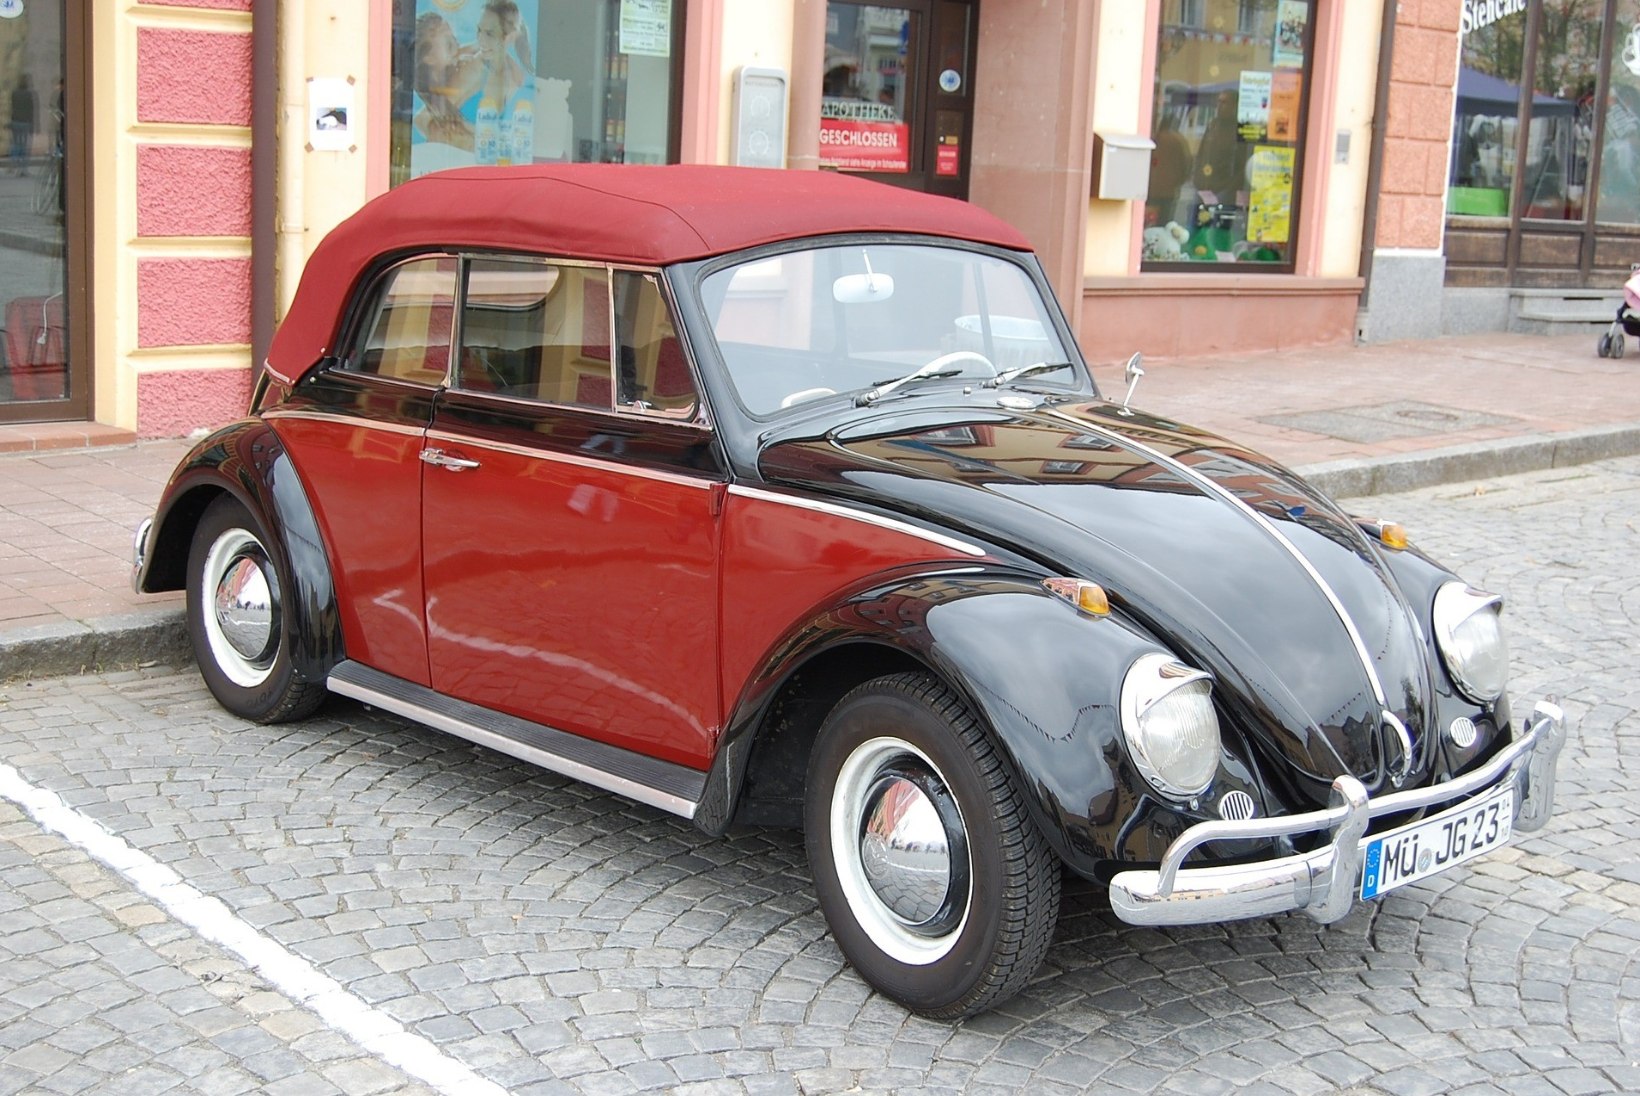 GALERII | PÕRNIKAS ON SURNUD, ELAGU PÕRNIKAS: Volkswagen Beetle läheb ajalukku